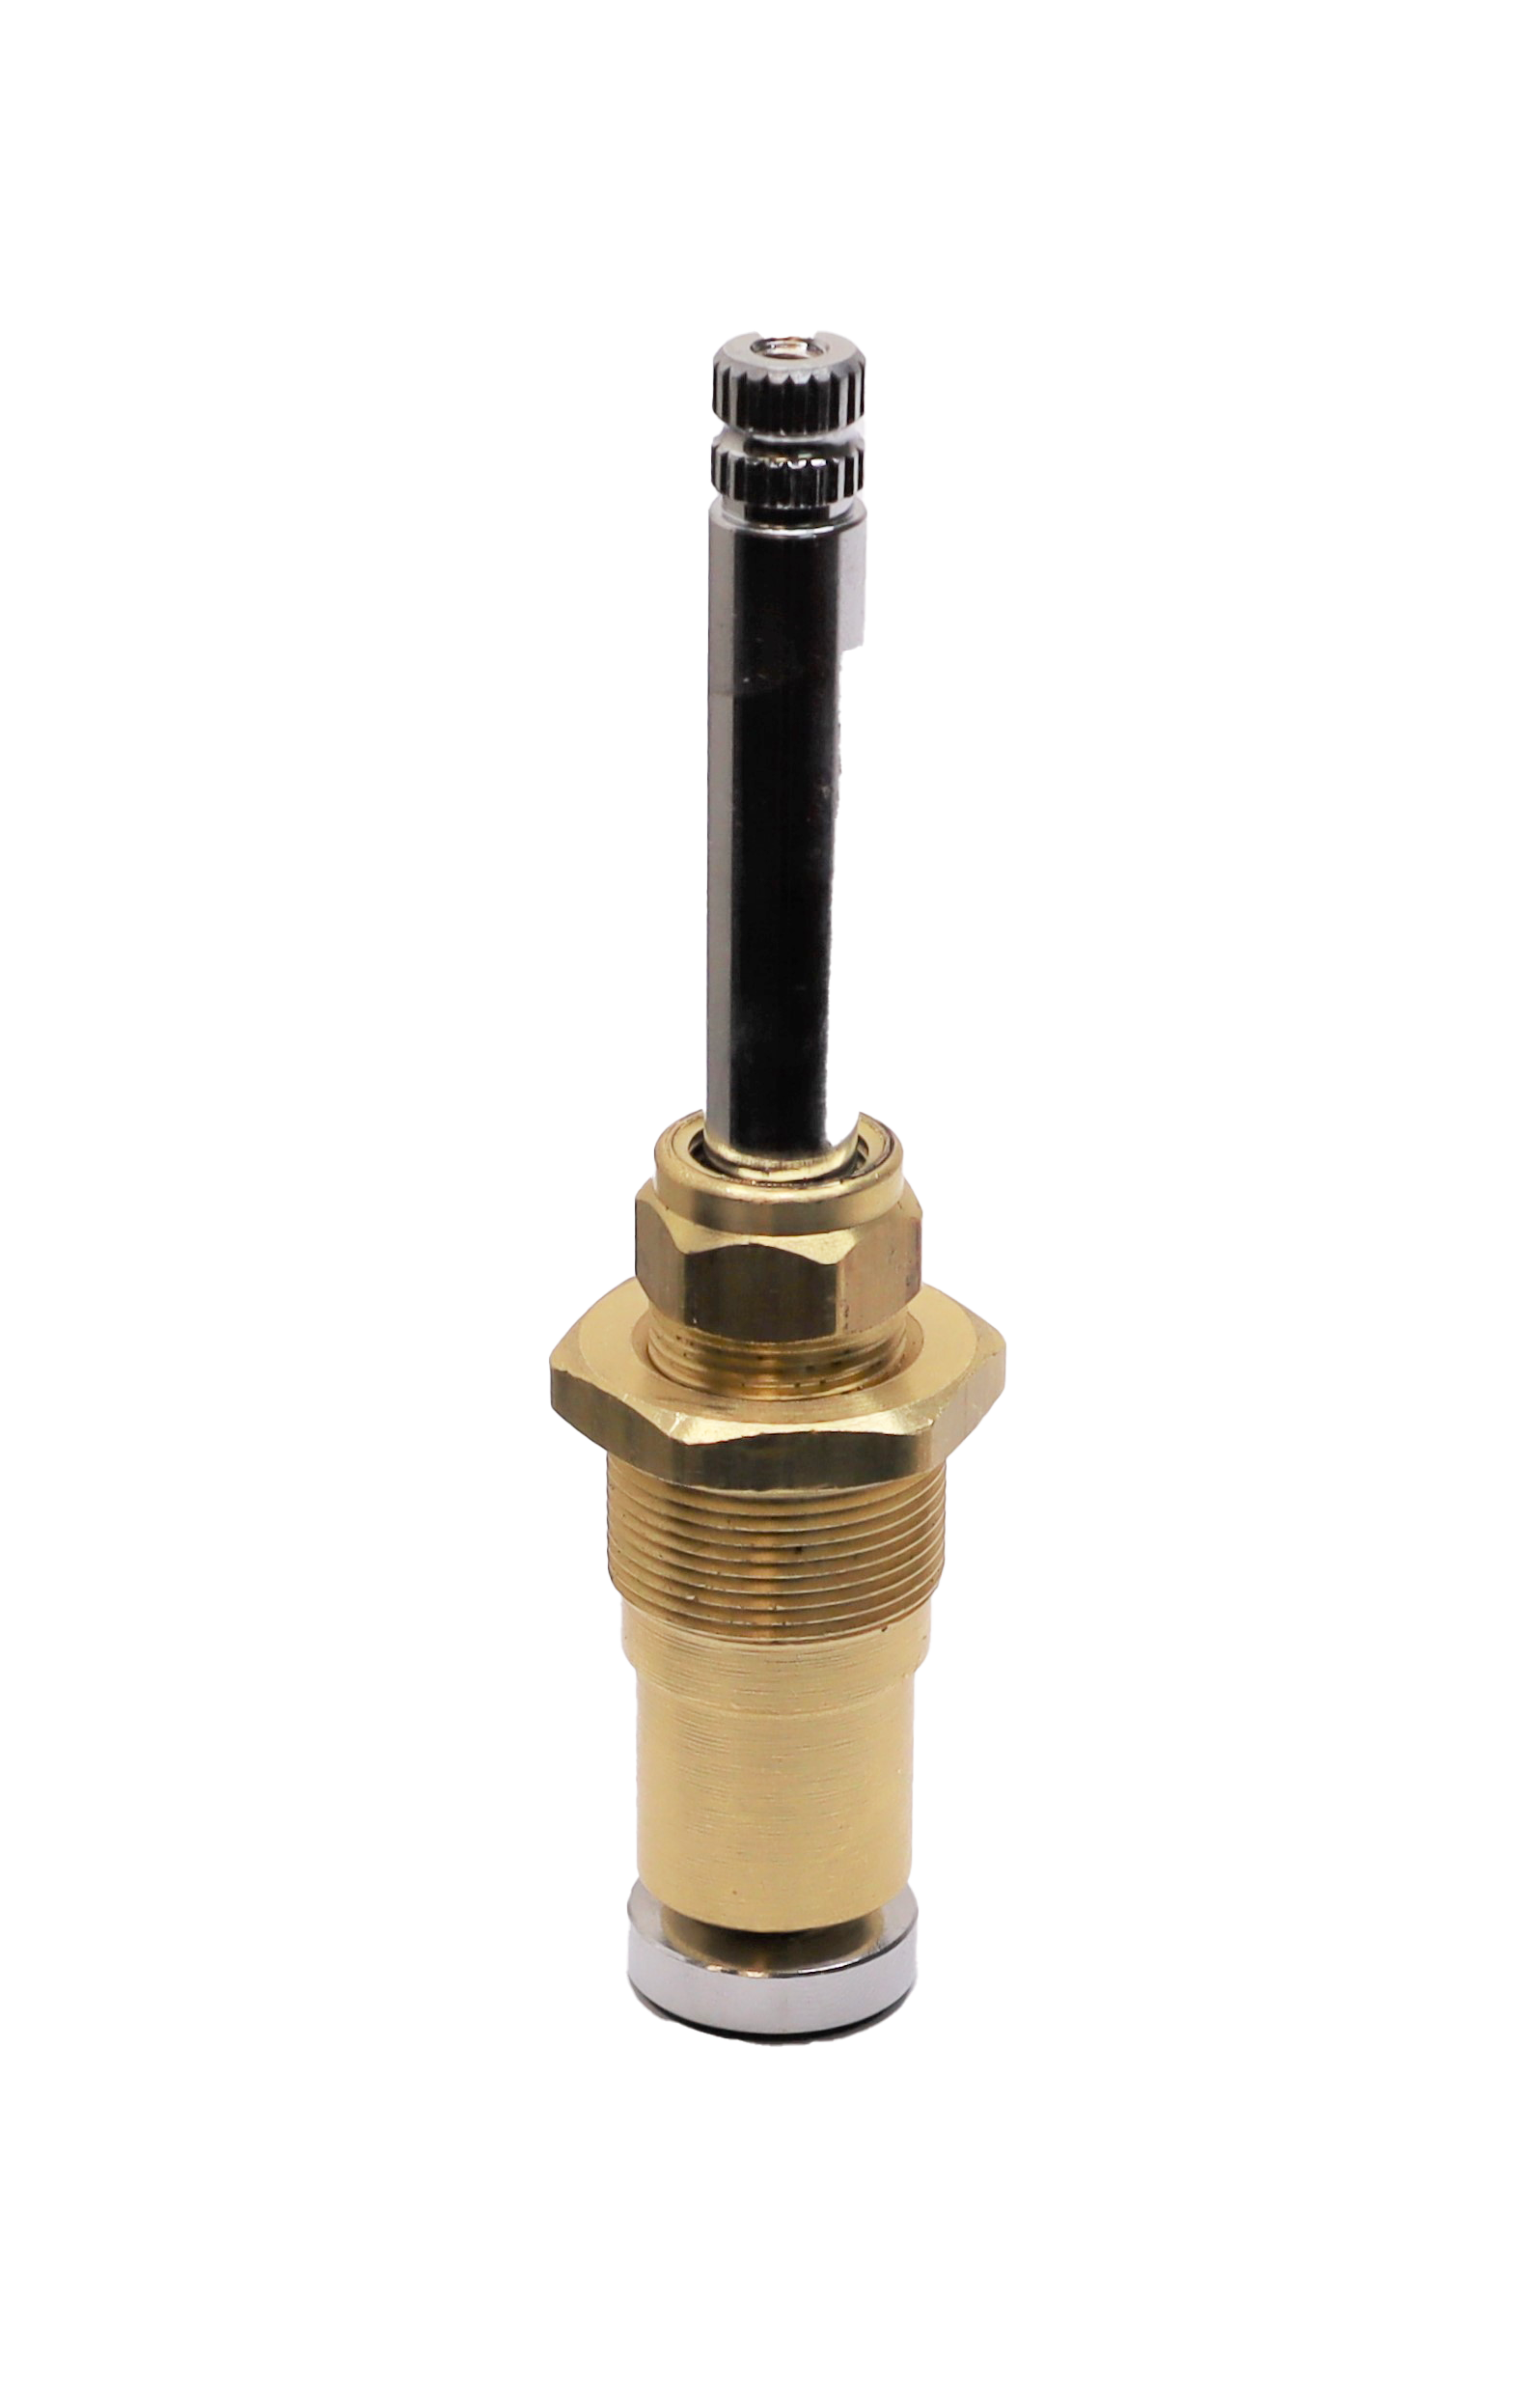 Chrome Plated Brass Stem for Speakman Shower Valves G05-0303